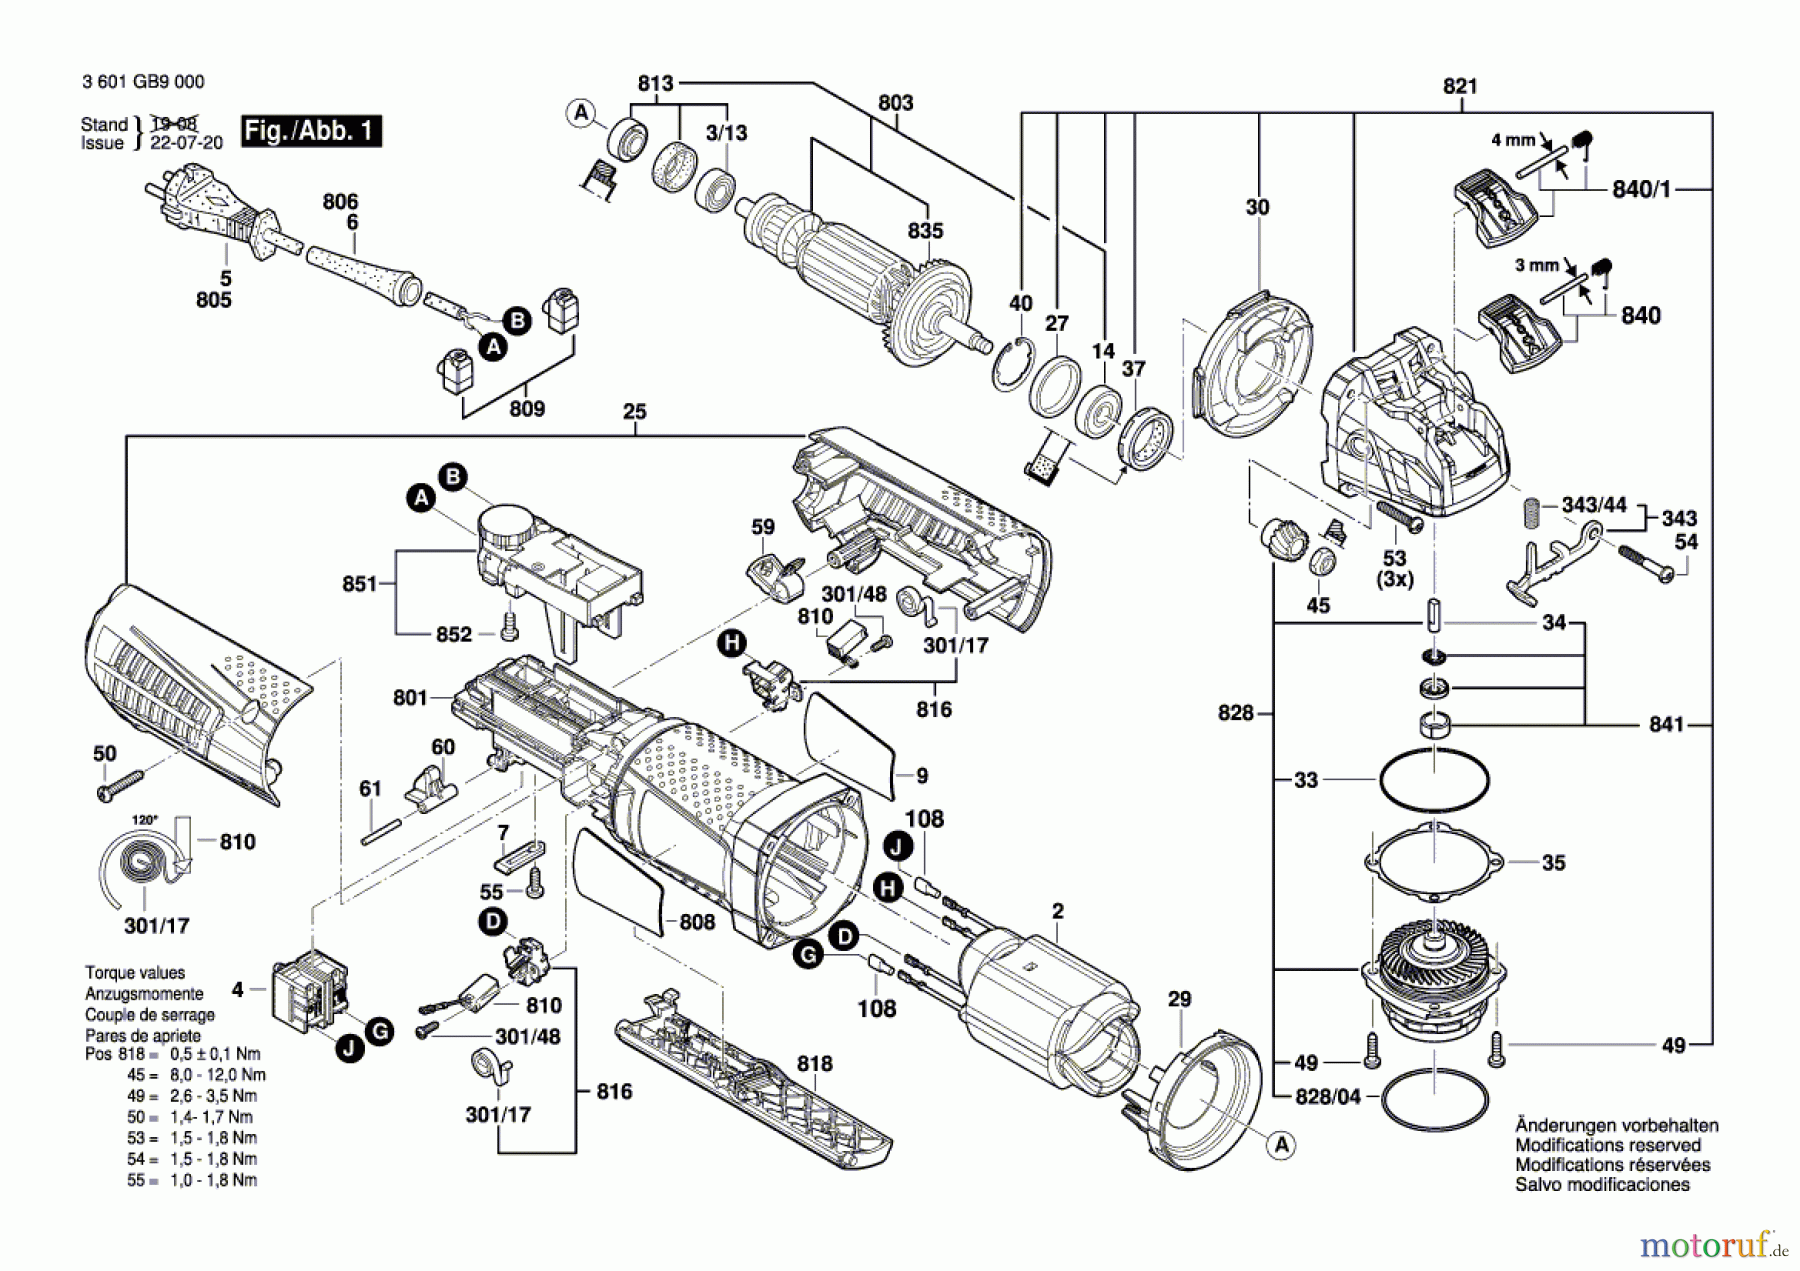  Bosch Werkzeug Winkelschleifer GWX 15-125 PS Seite 1